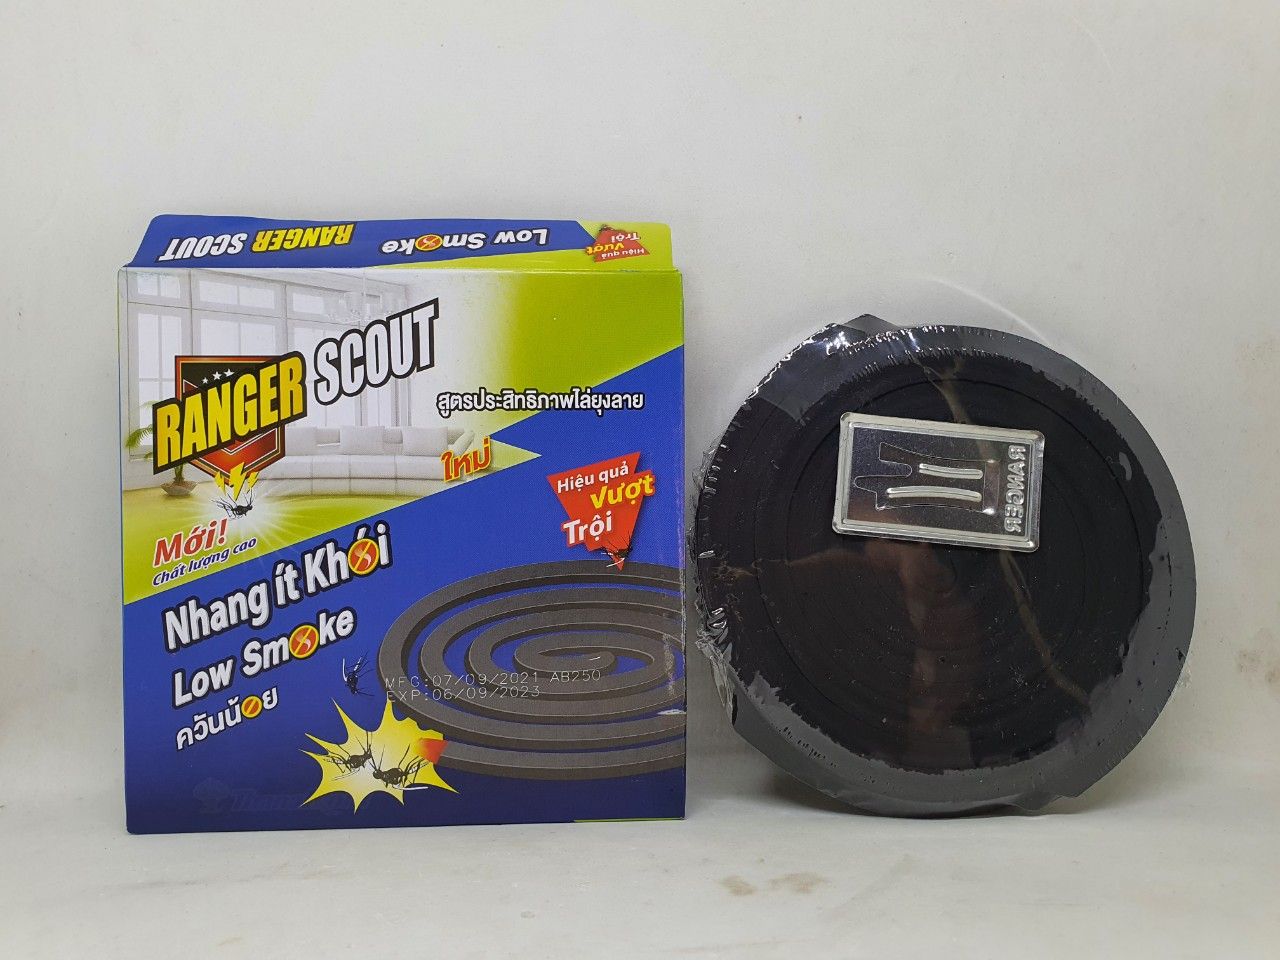  5 hộp nhang muỗi khoang ranger scout low smoke có 50 khoang nhang chính hãng thái lan 